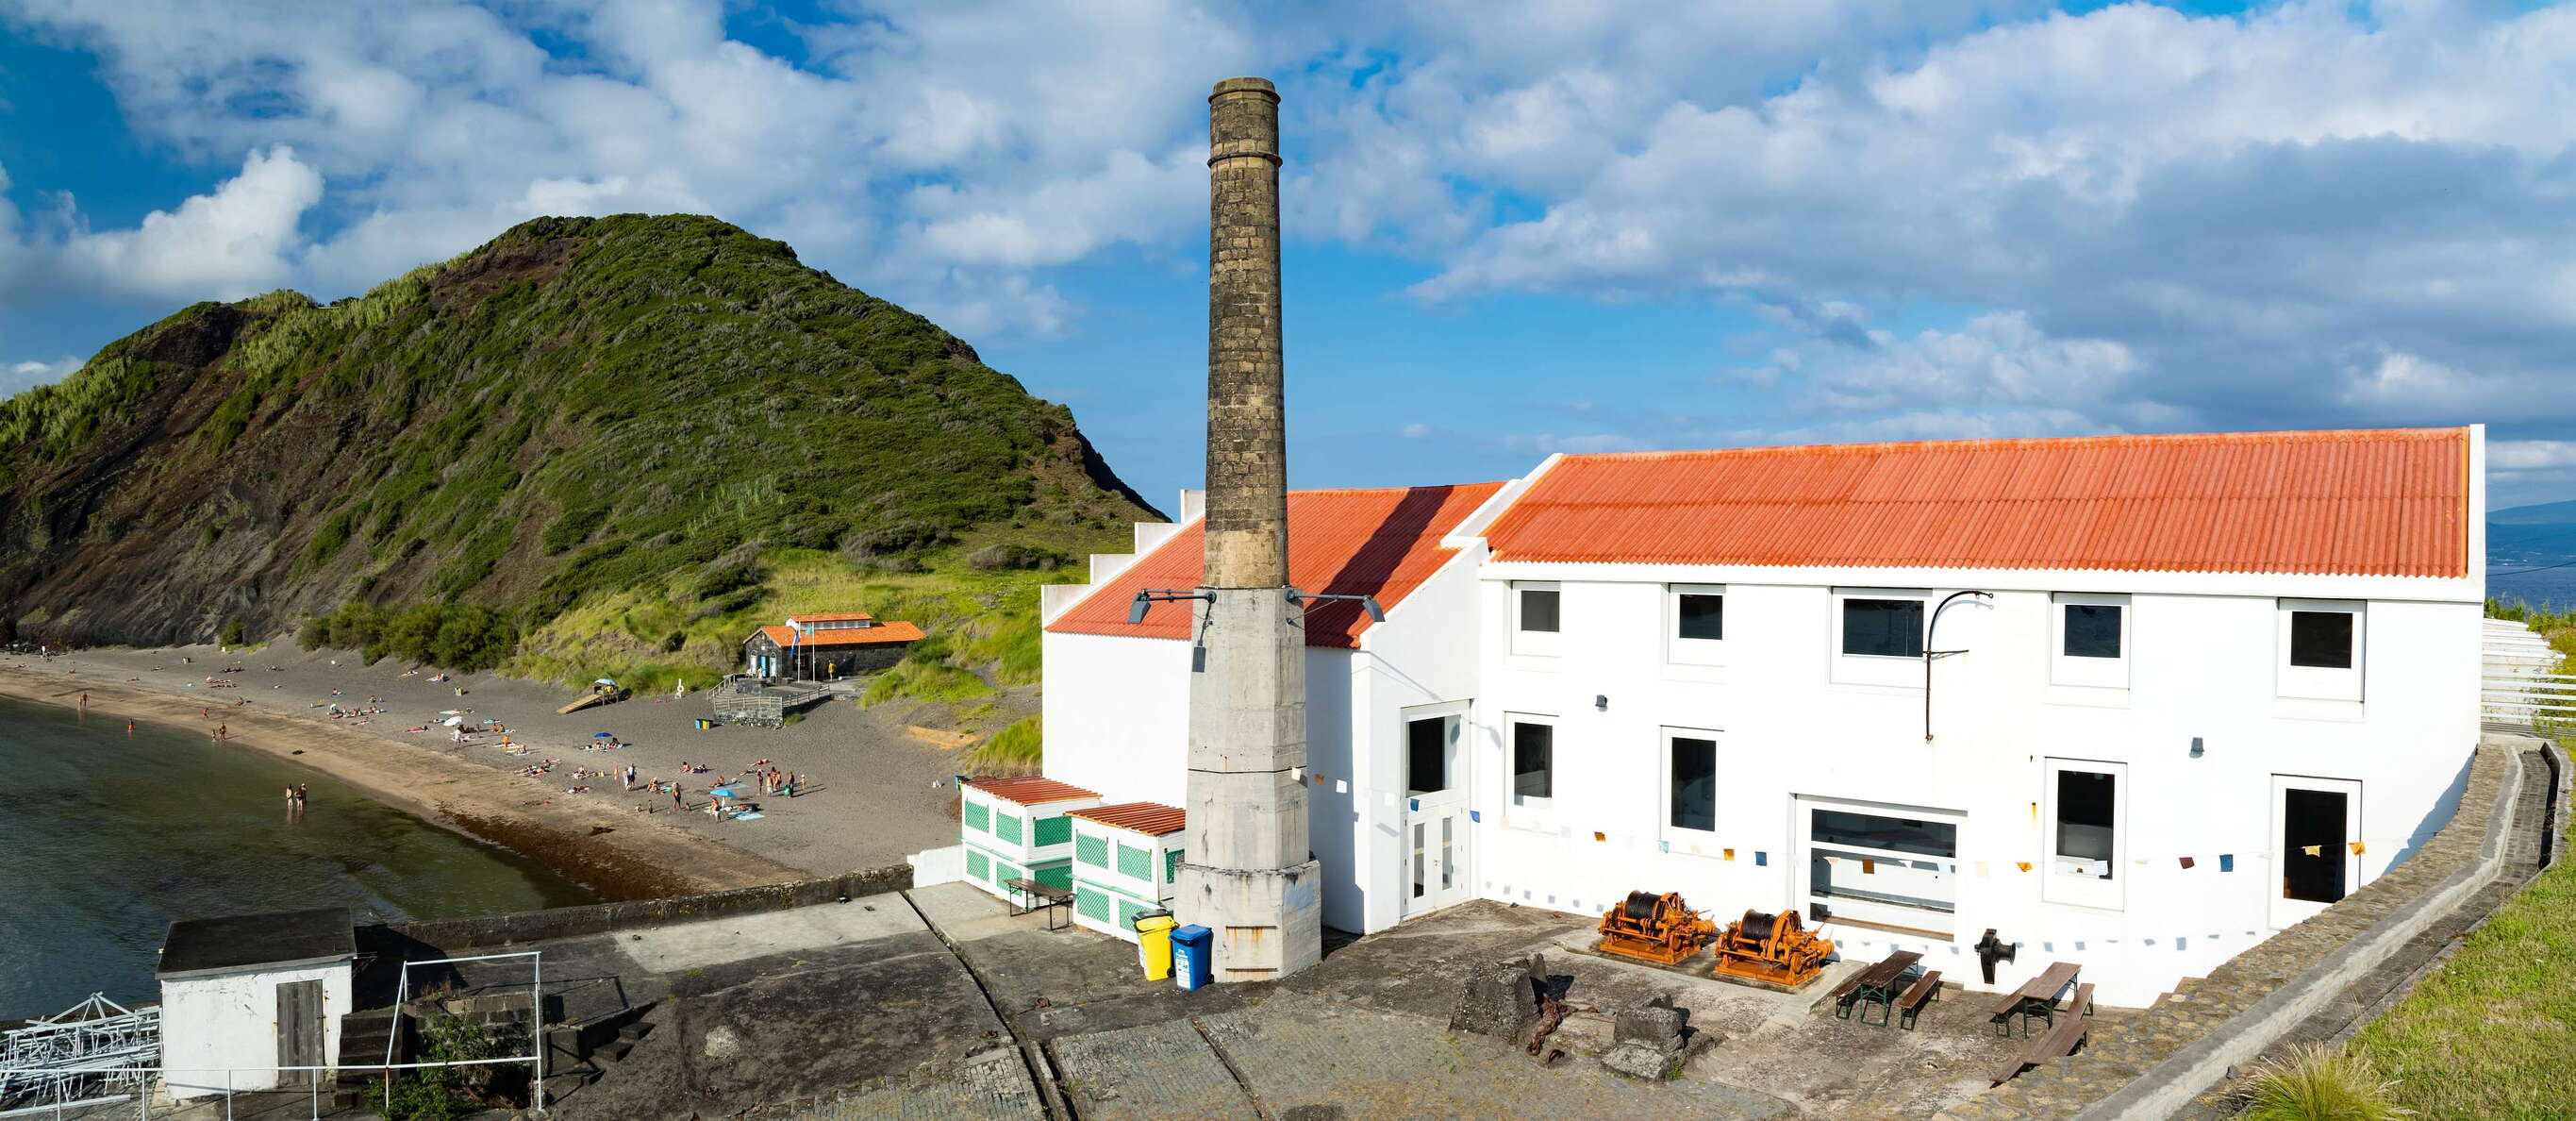 Horta | Observatório do Mar dos Açores and Praia de Porto Pim